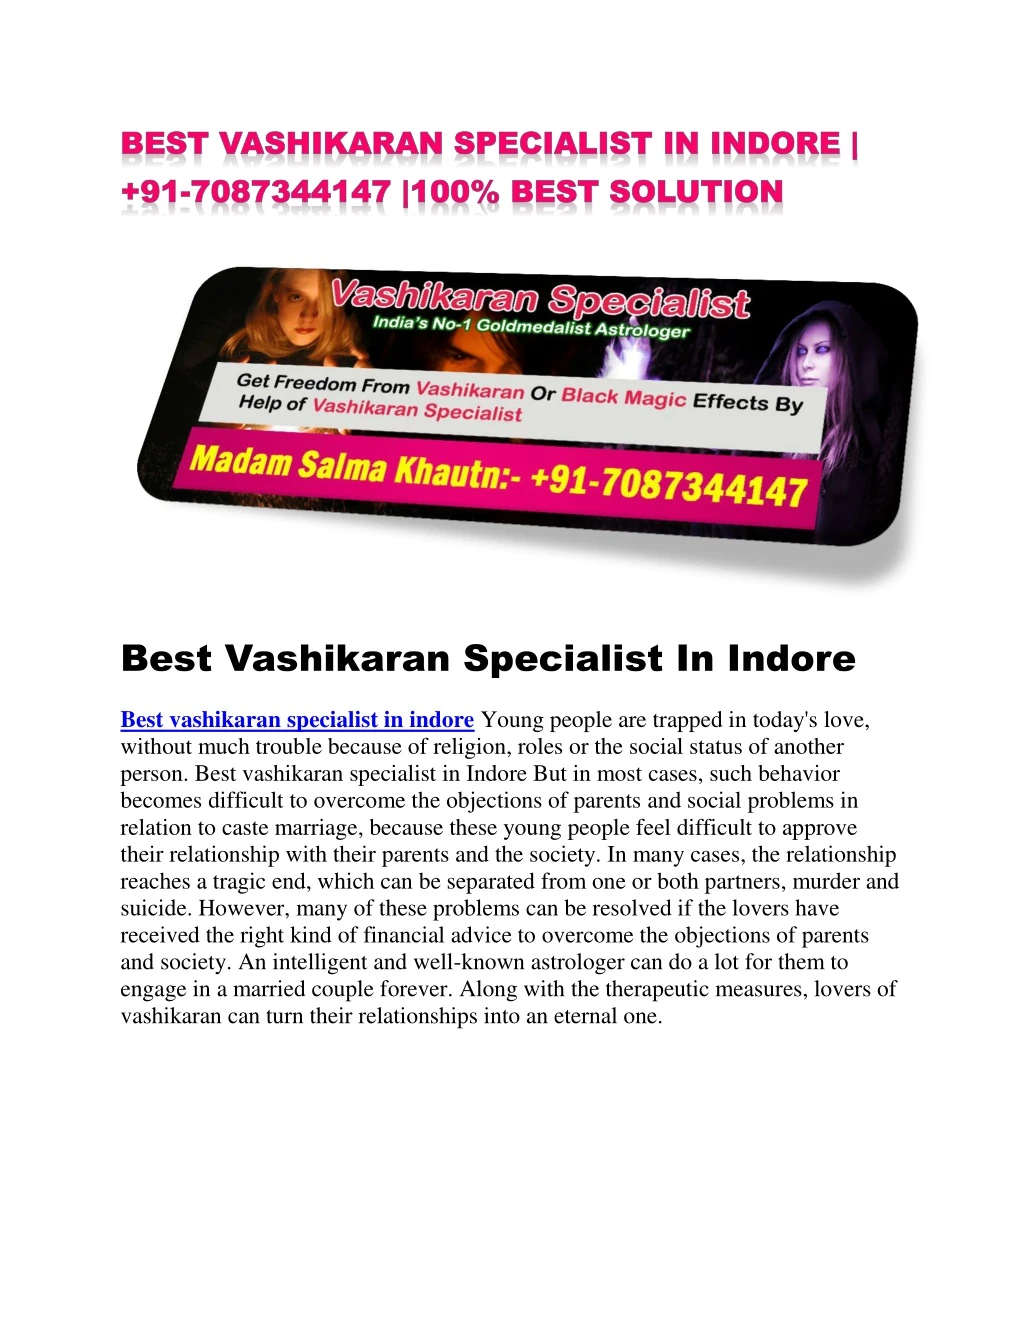 best vashikaran specialist in indore